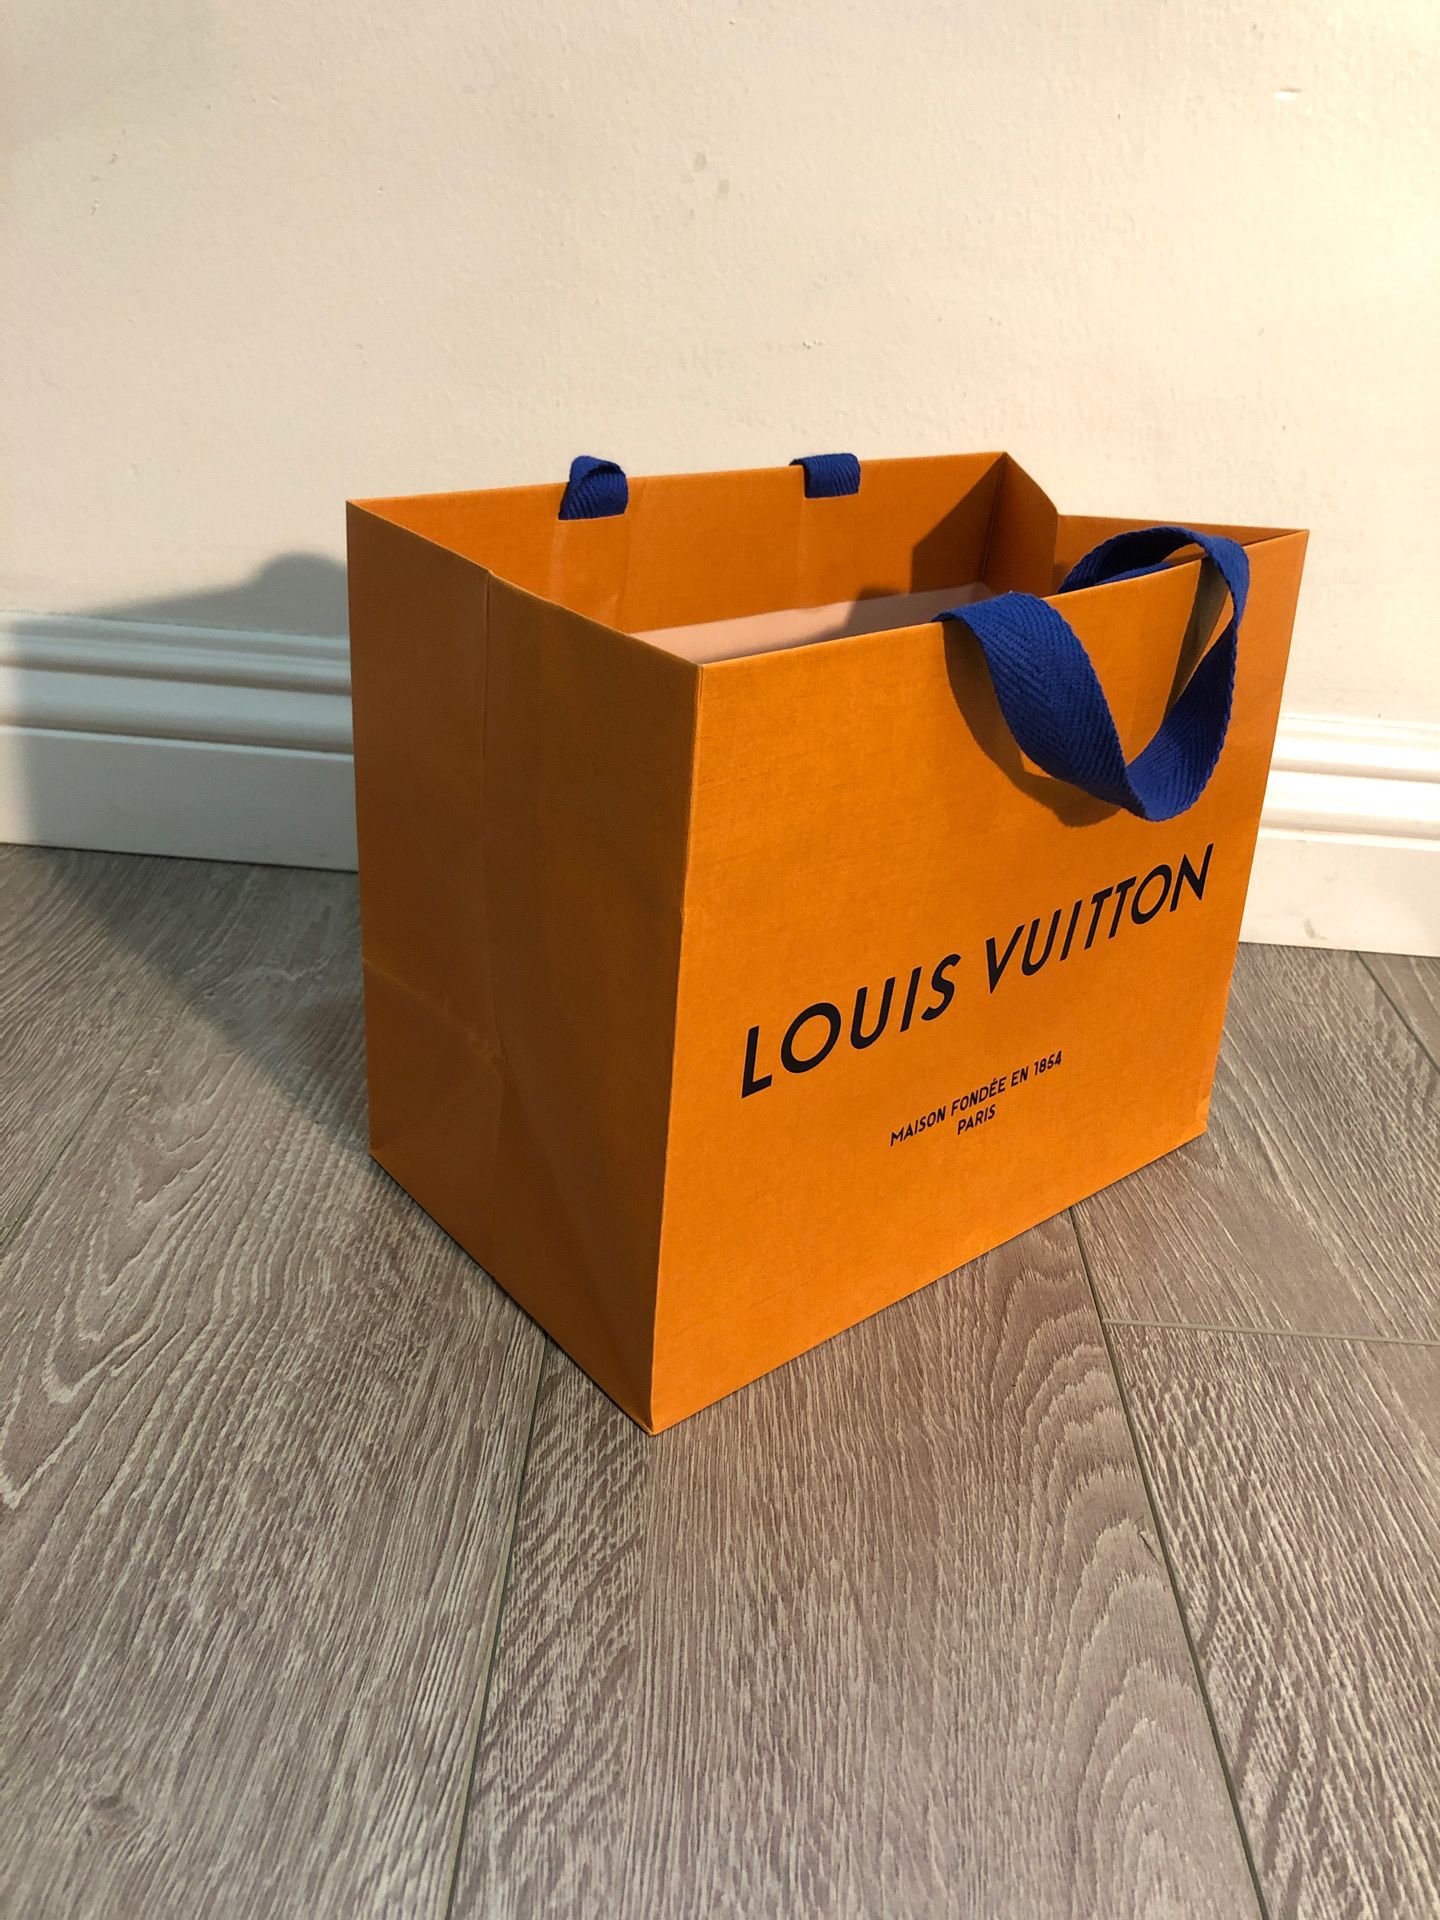 Louis vuitton paper bag